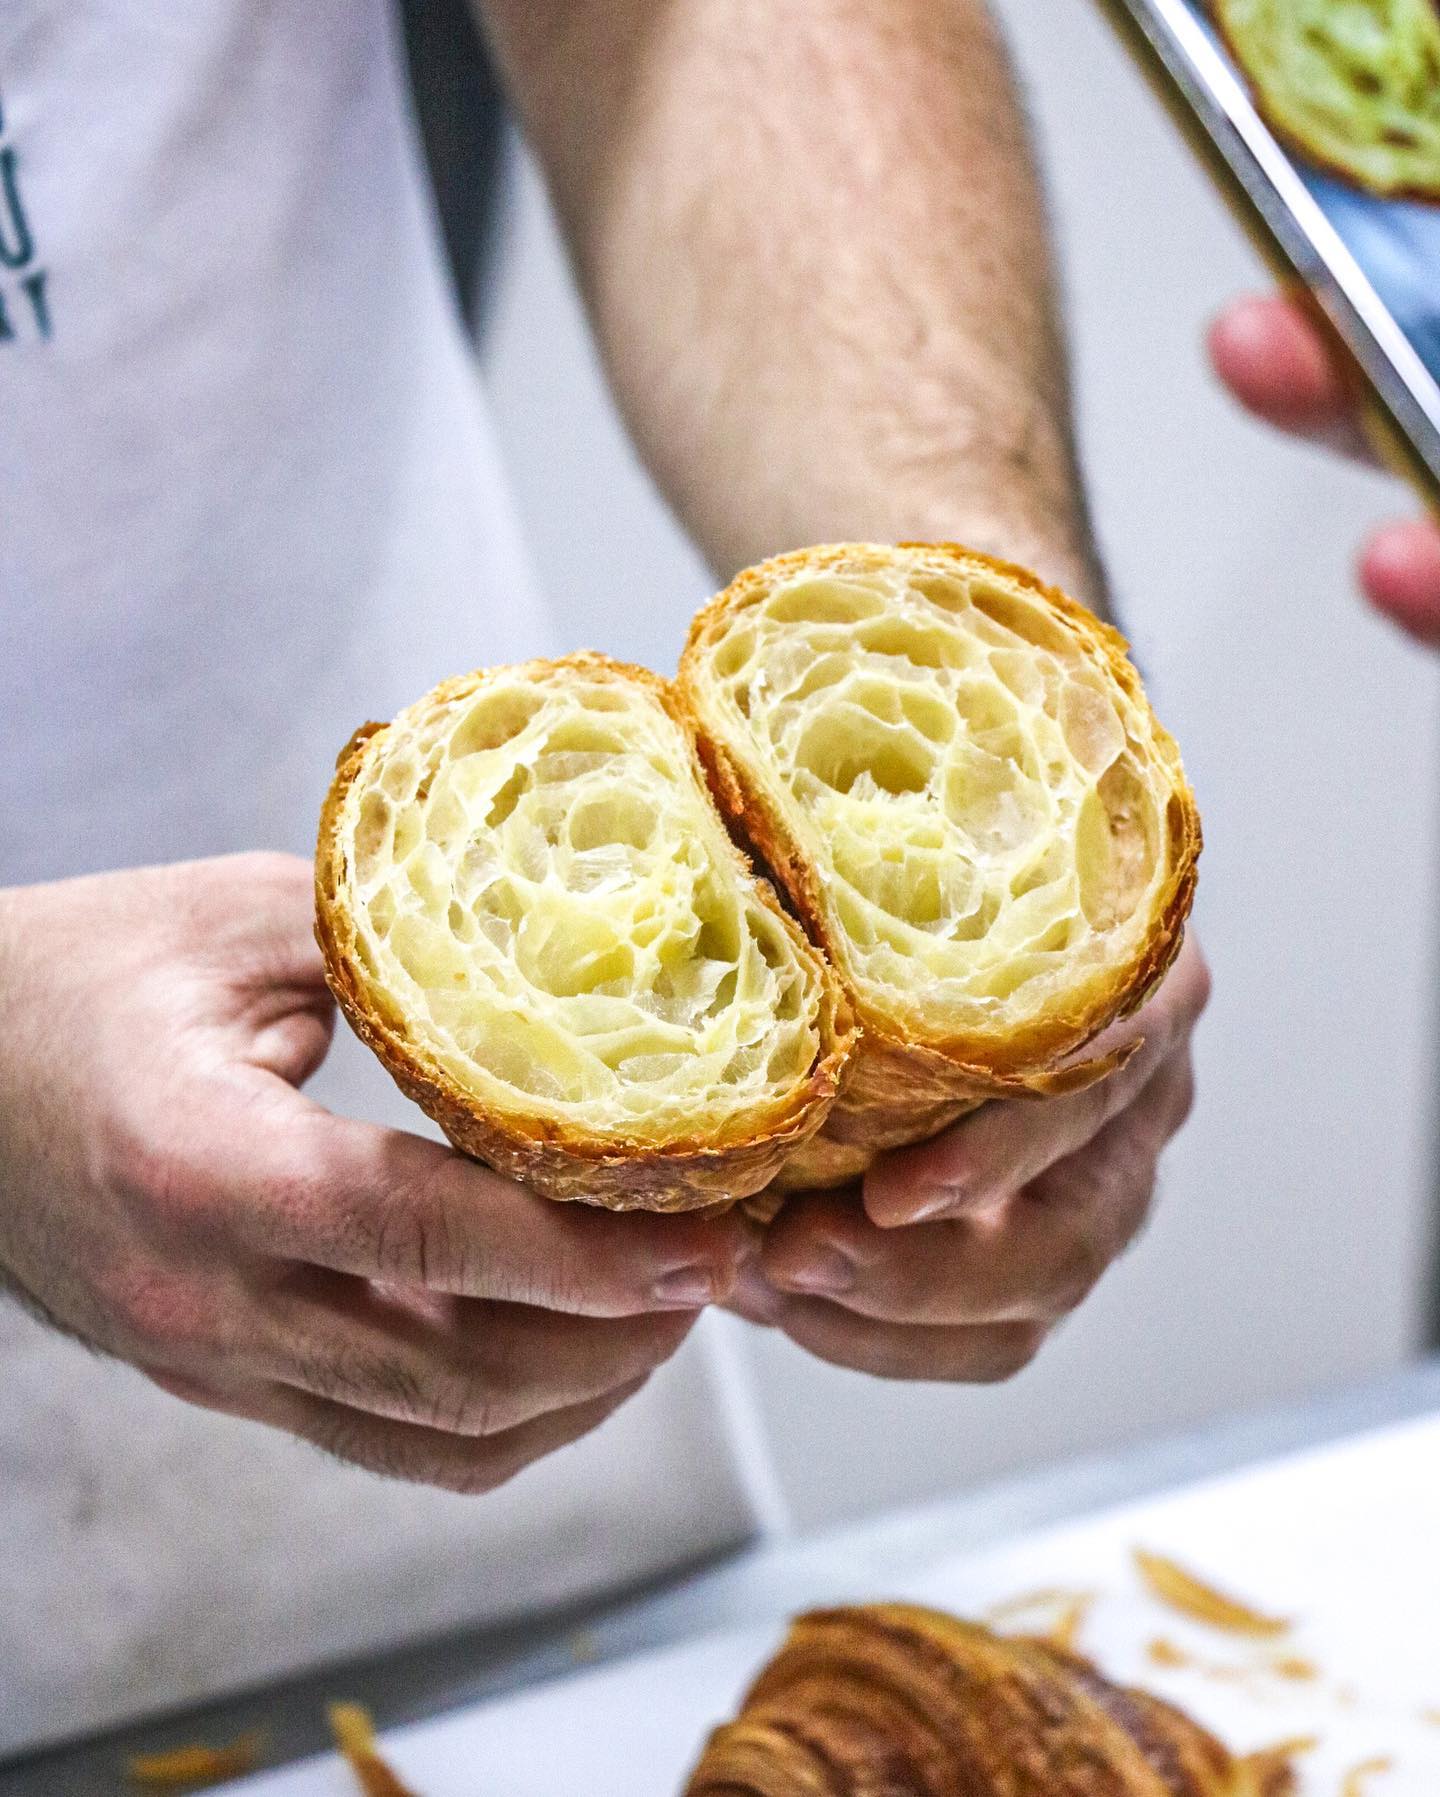 Best deals of June 2022 - croissants, pop-ups from Tiong Bahru Bakery